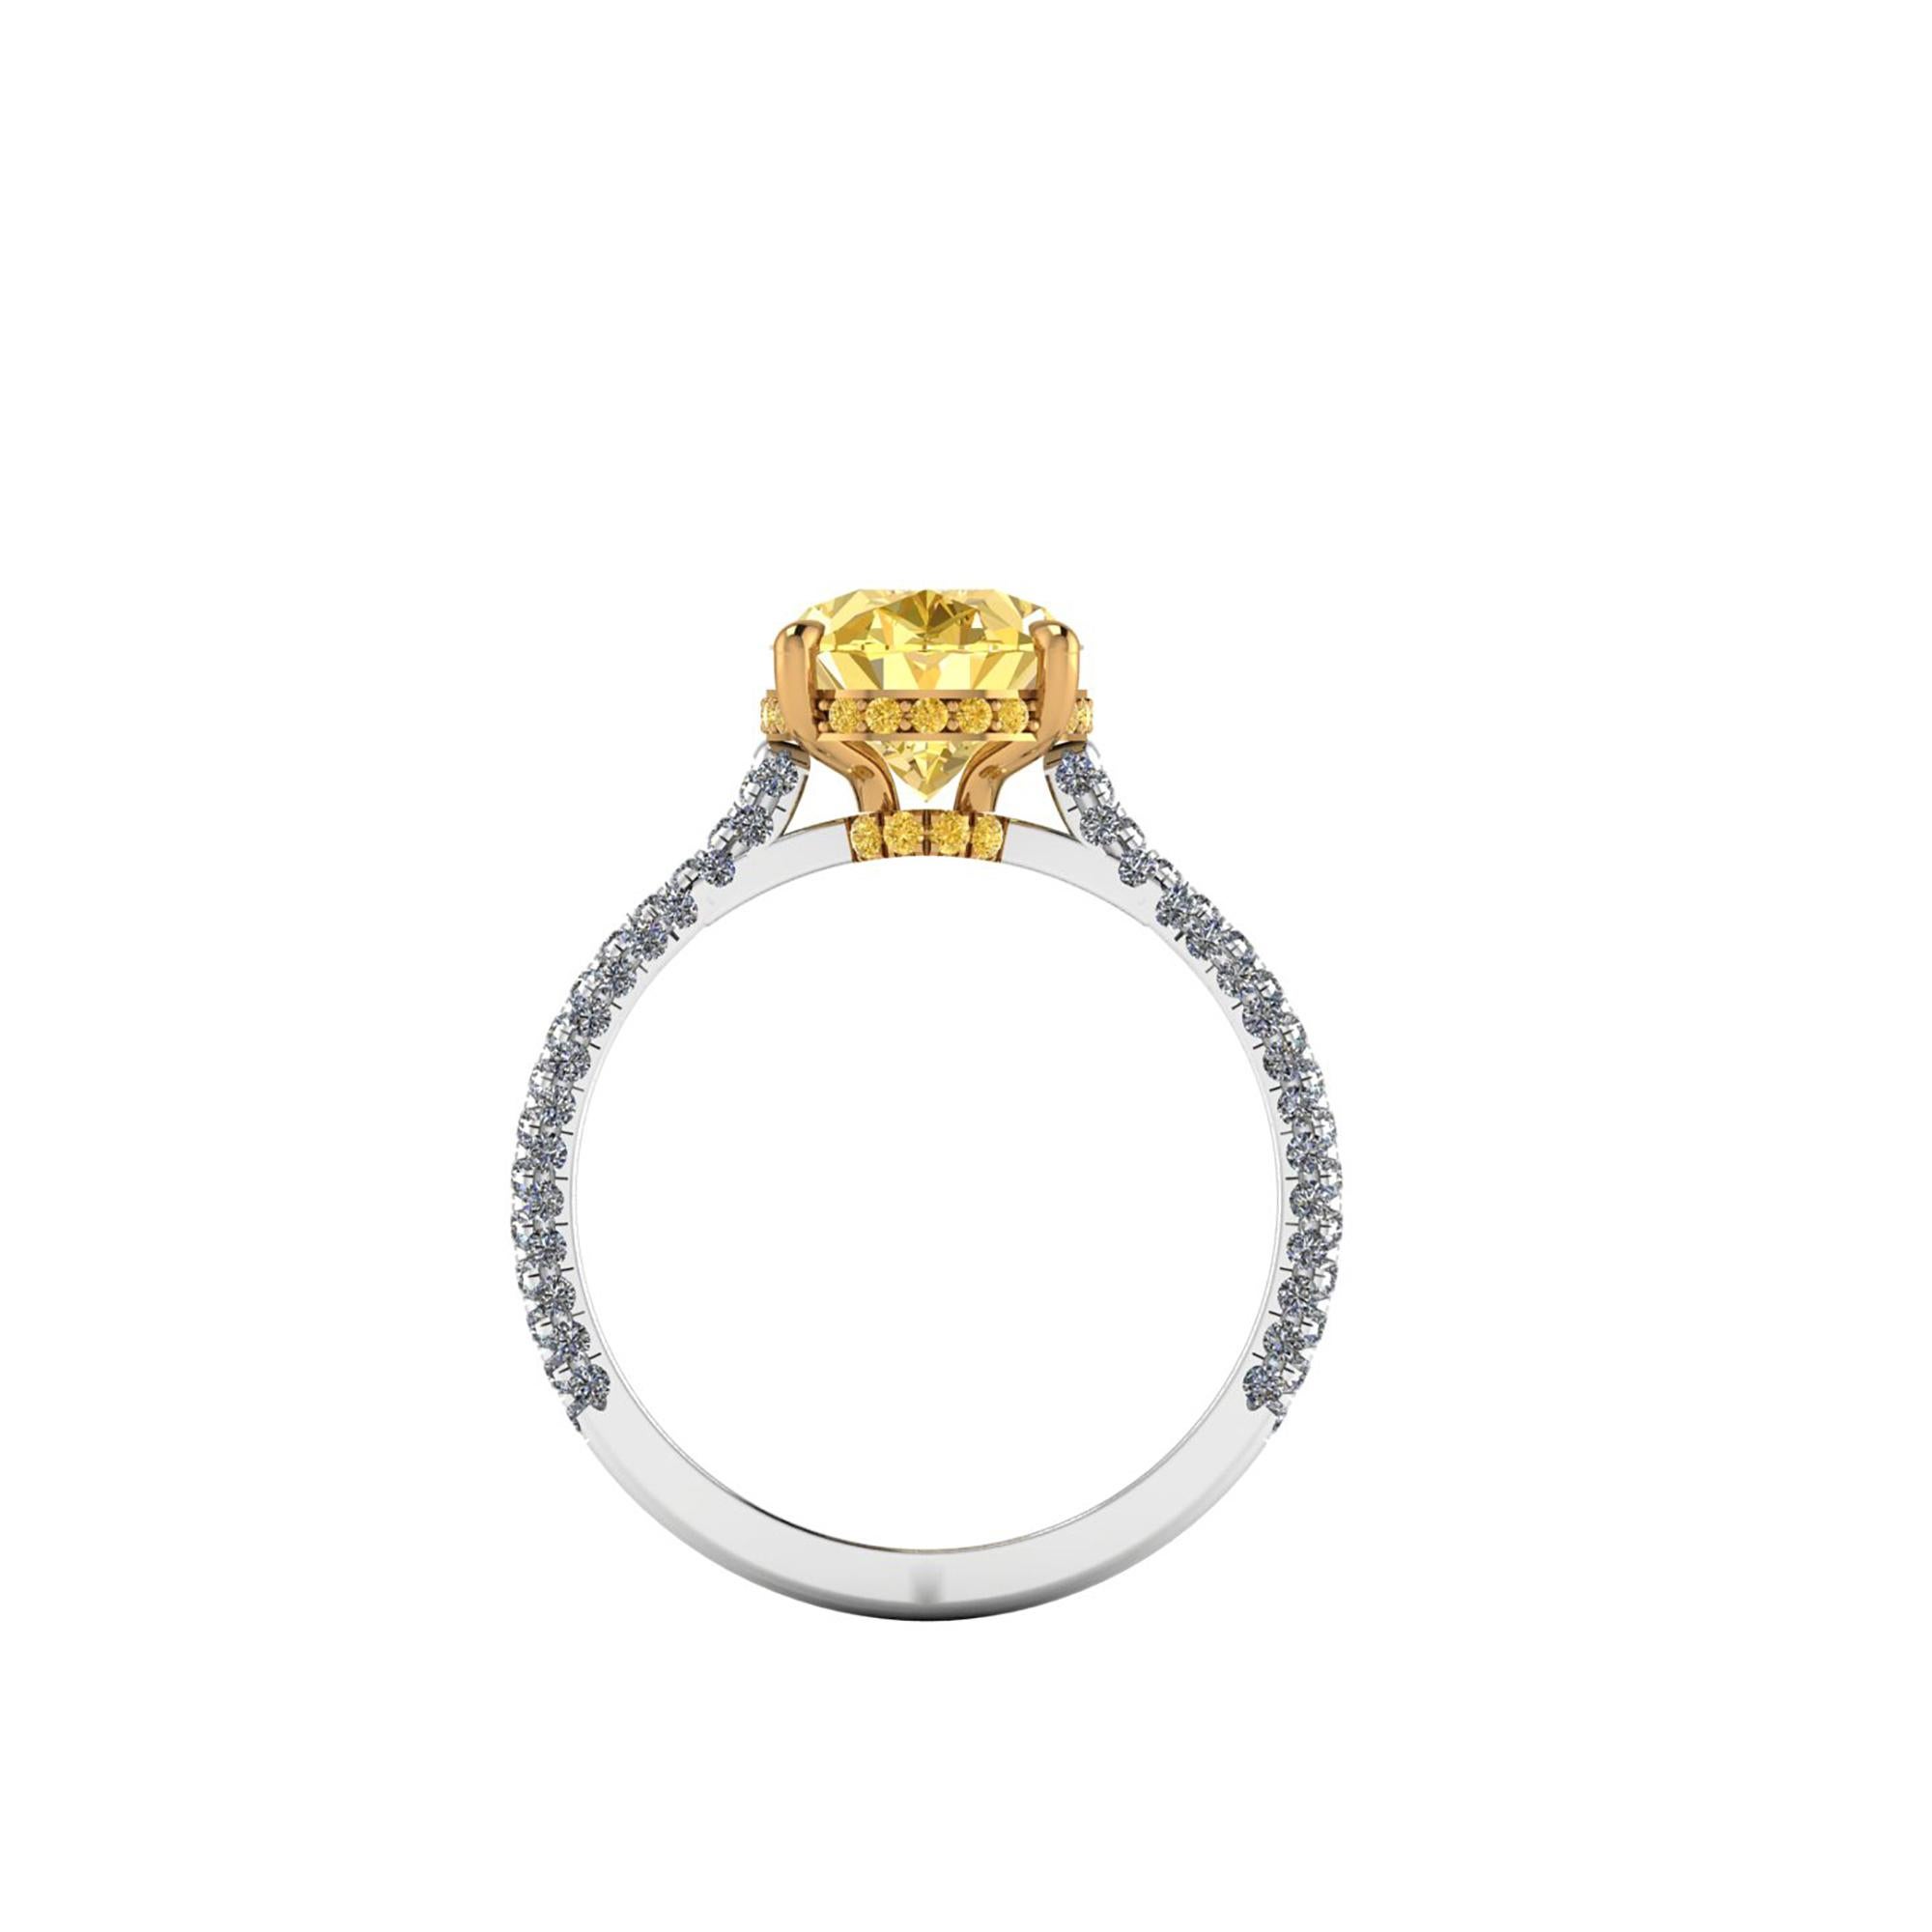 Un diamant très rare par sa couleur et sa beauté, un diamant ovale certifié GIA de 3,09 carats de couleur jaune foncé non fluorescent, un diamant rare et précieux, serti sur une bague en platine 950 et or jaune 18 carats, conçue et fabriquée à la